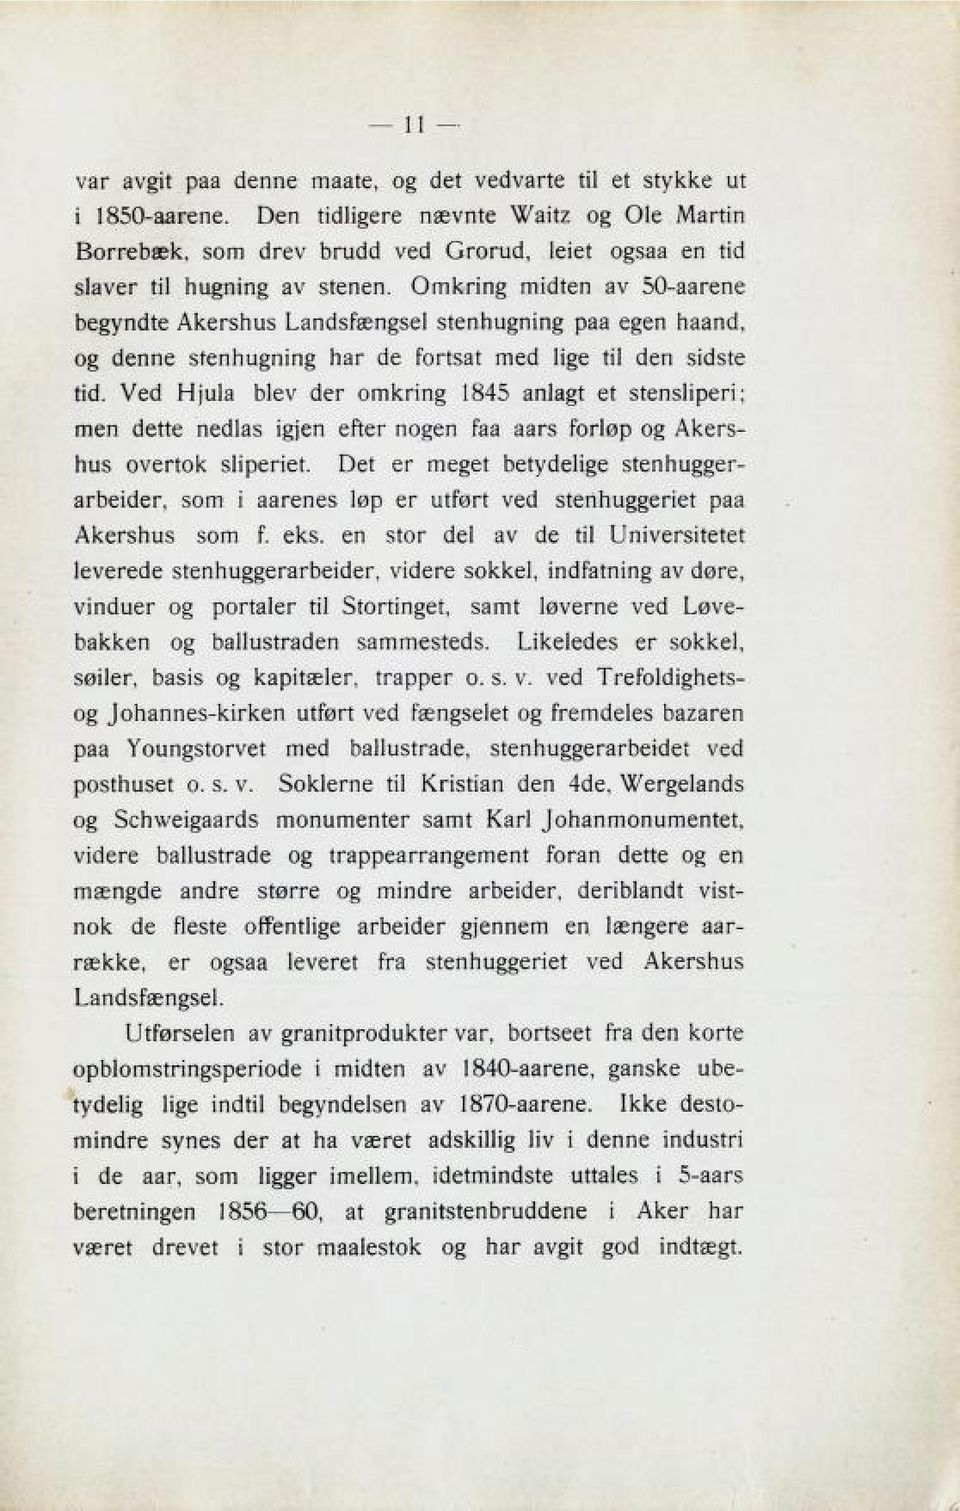 Omkring midten av 50-aarene begyndte Akershus Landsfengsel Btennuzninz paa egen N22n6, og denne BtennuZmnZ har de fortß3t med lize til den 3ici3te tid. Ved Hjula blev der omkring 1845 anlagt et Btenß!